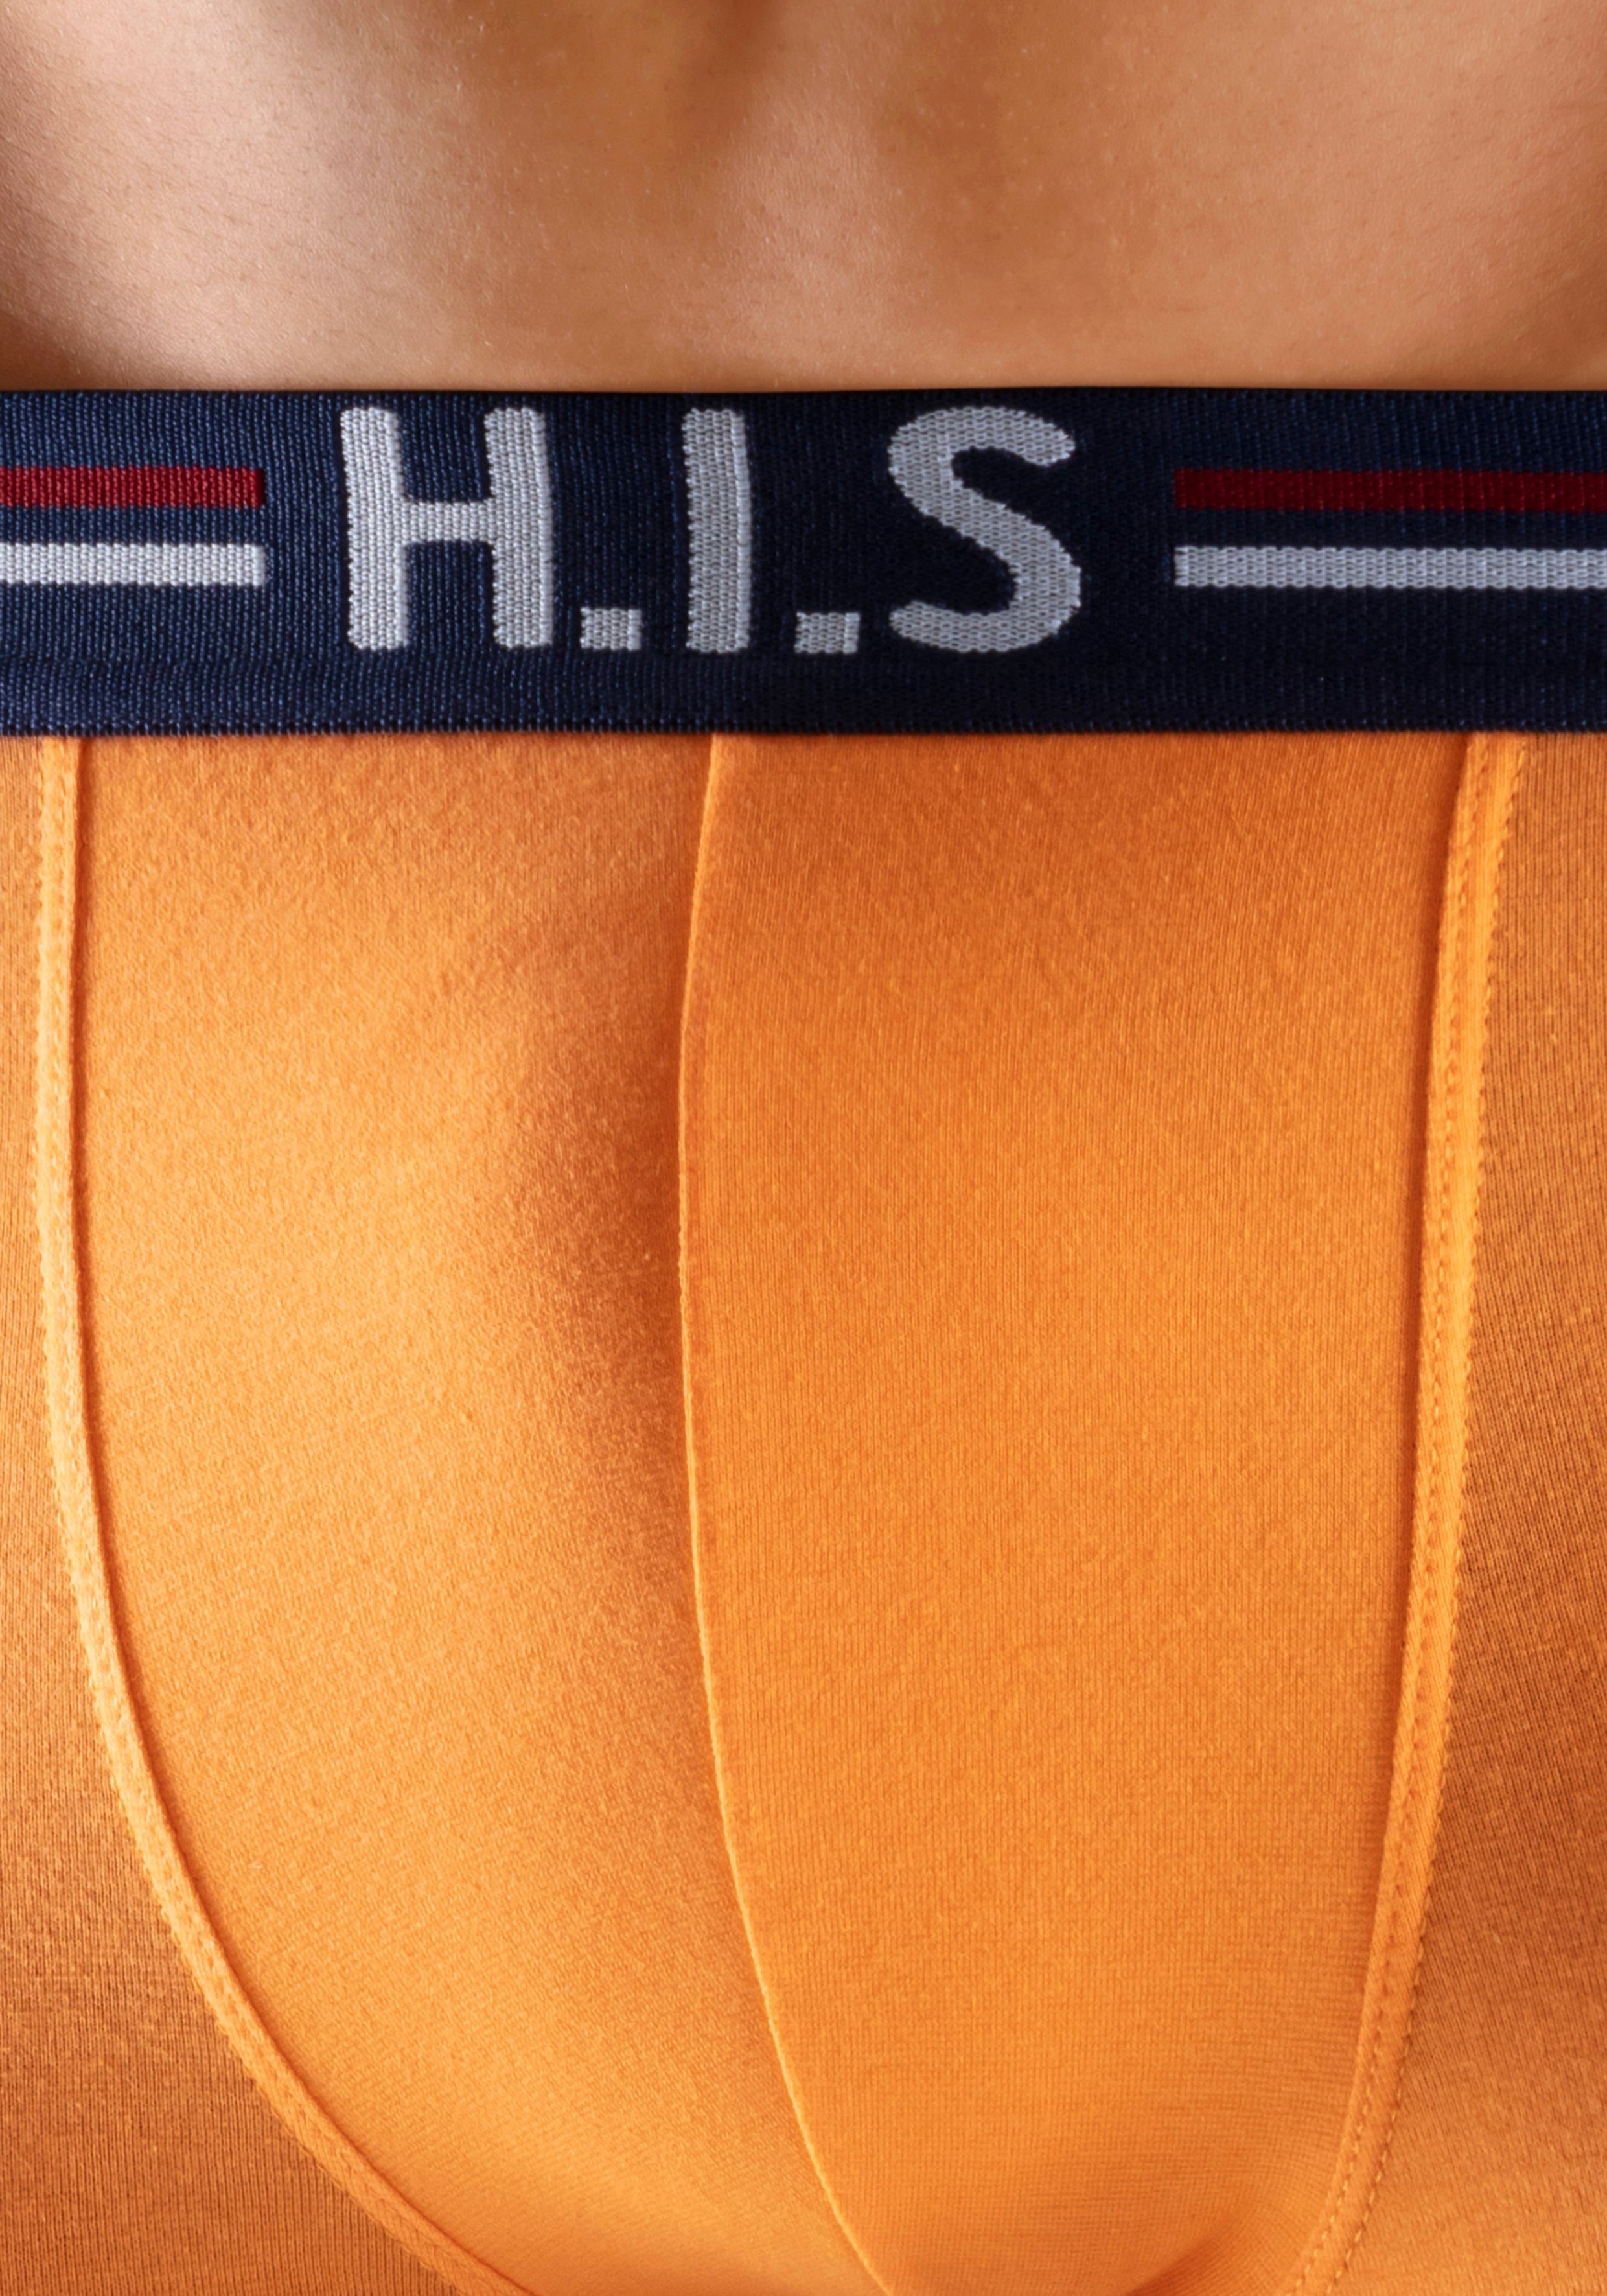 (Packung, orange, Bund mint, grau-meliert, Hipster-Form im Streifen navy, Boxershorts H.I.S in 5-St) und schwarz mit Markenlogo